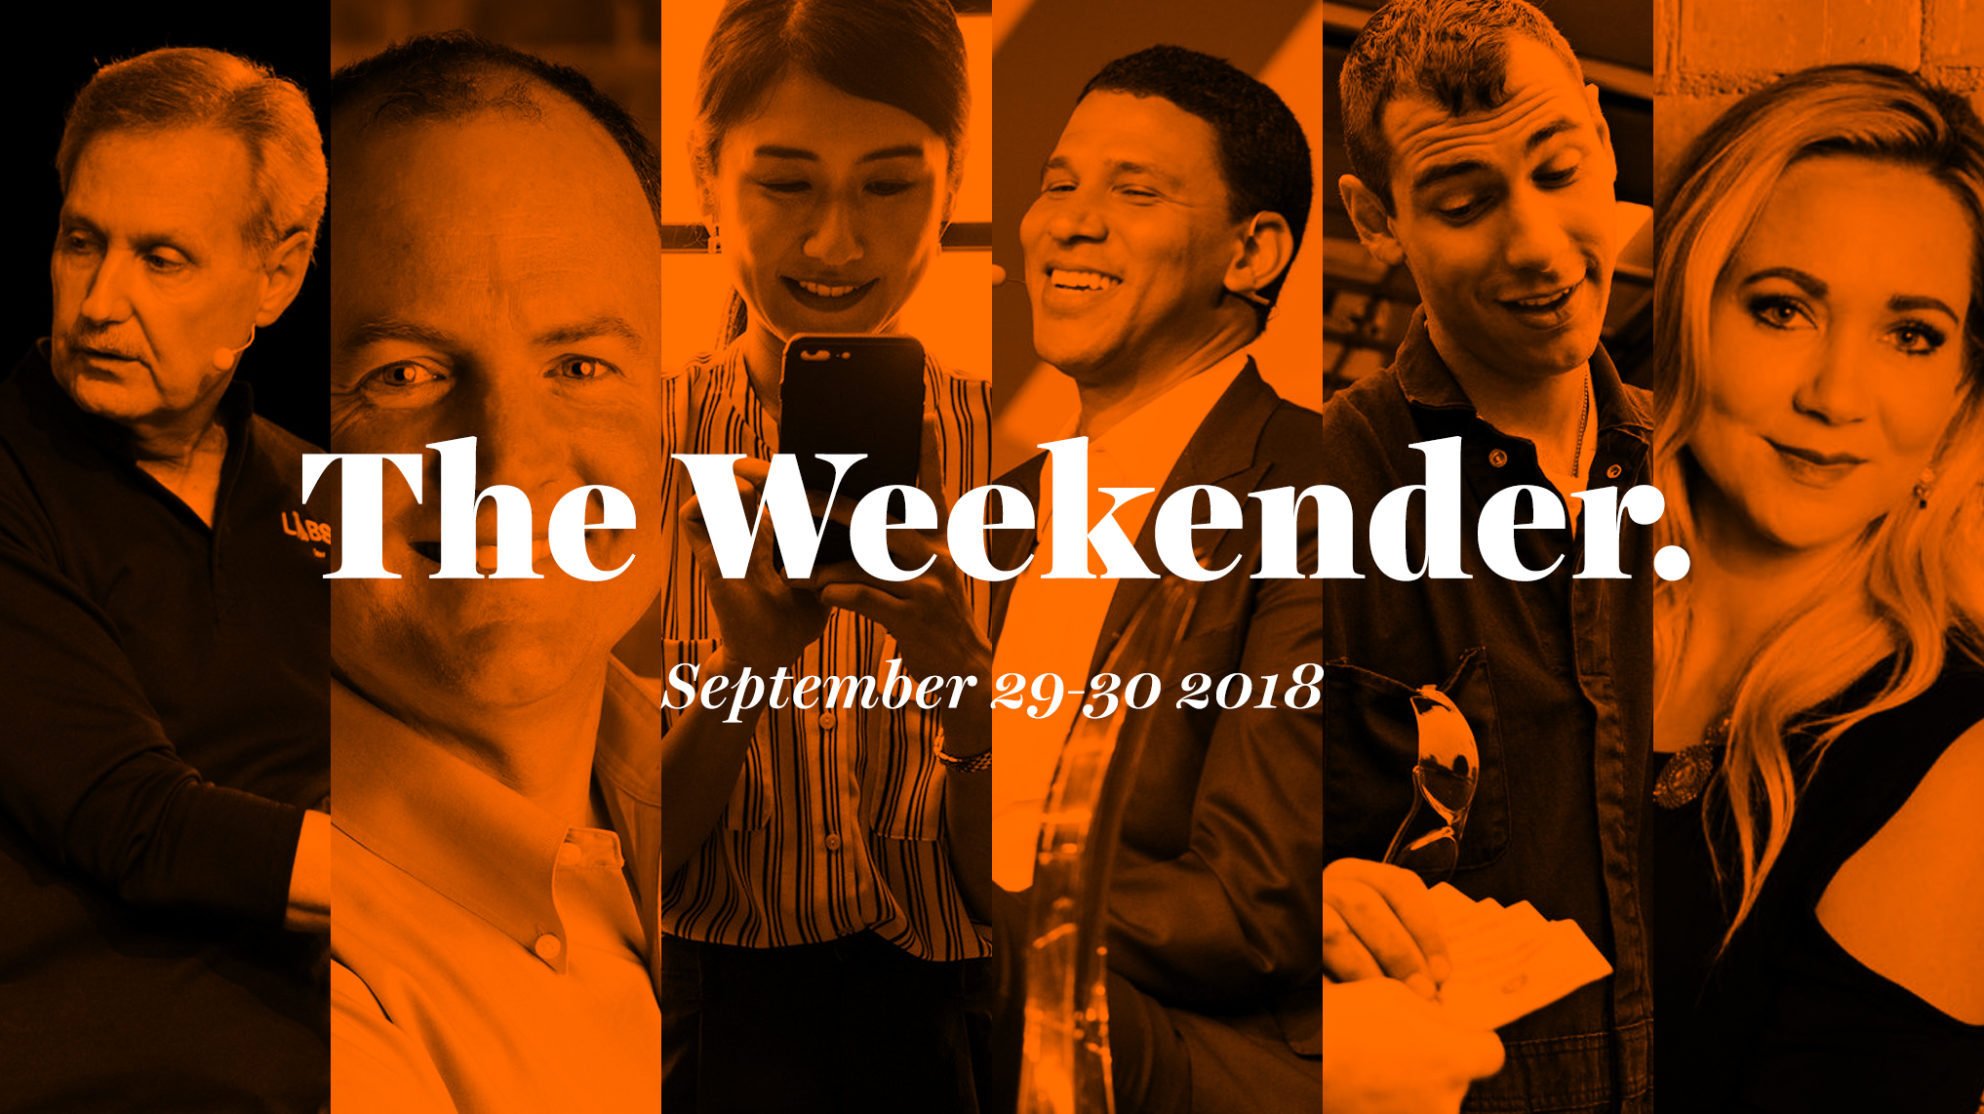 The Inman Weekender, September 29-30, 2018